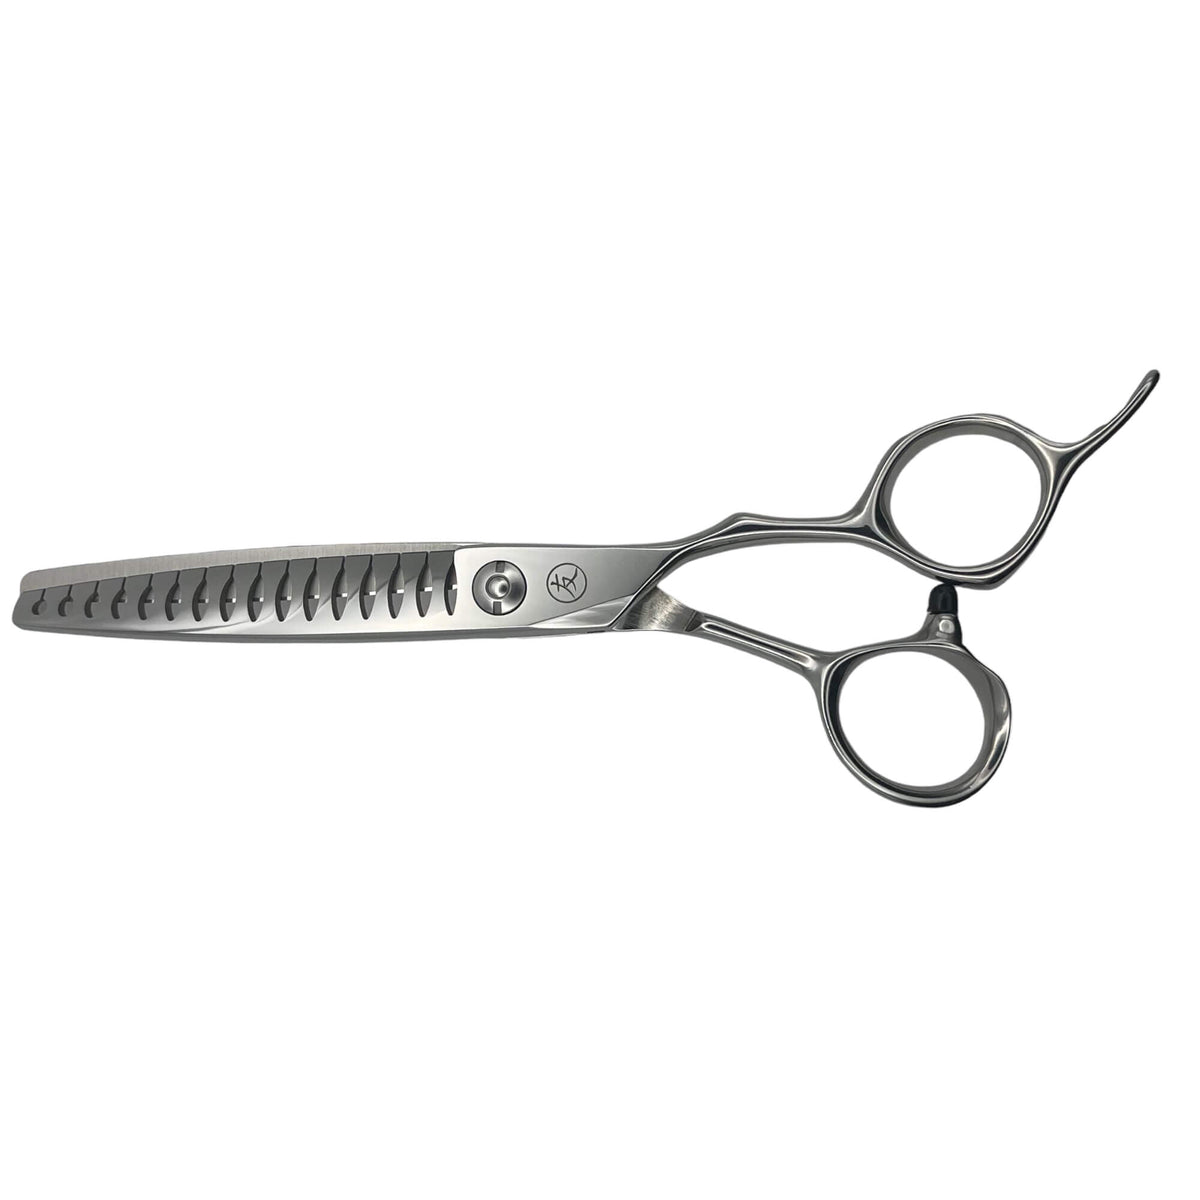 SHATTER texturising scissors and chunker scissors 